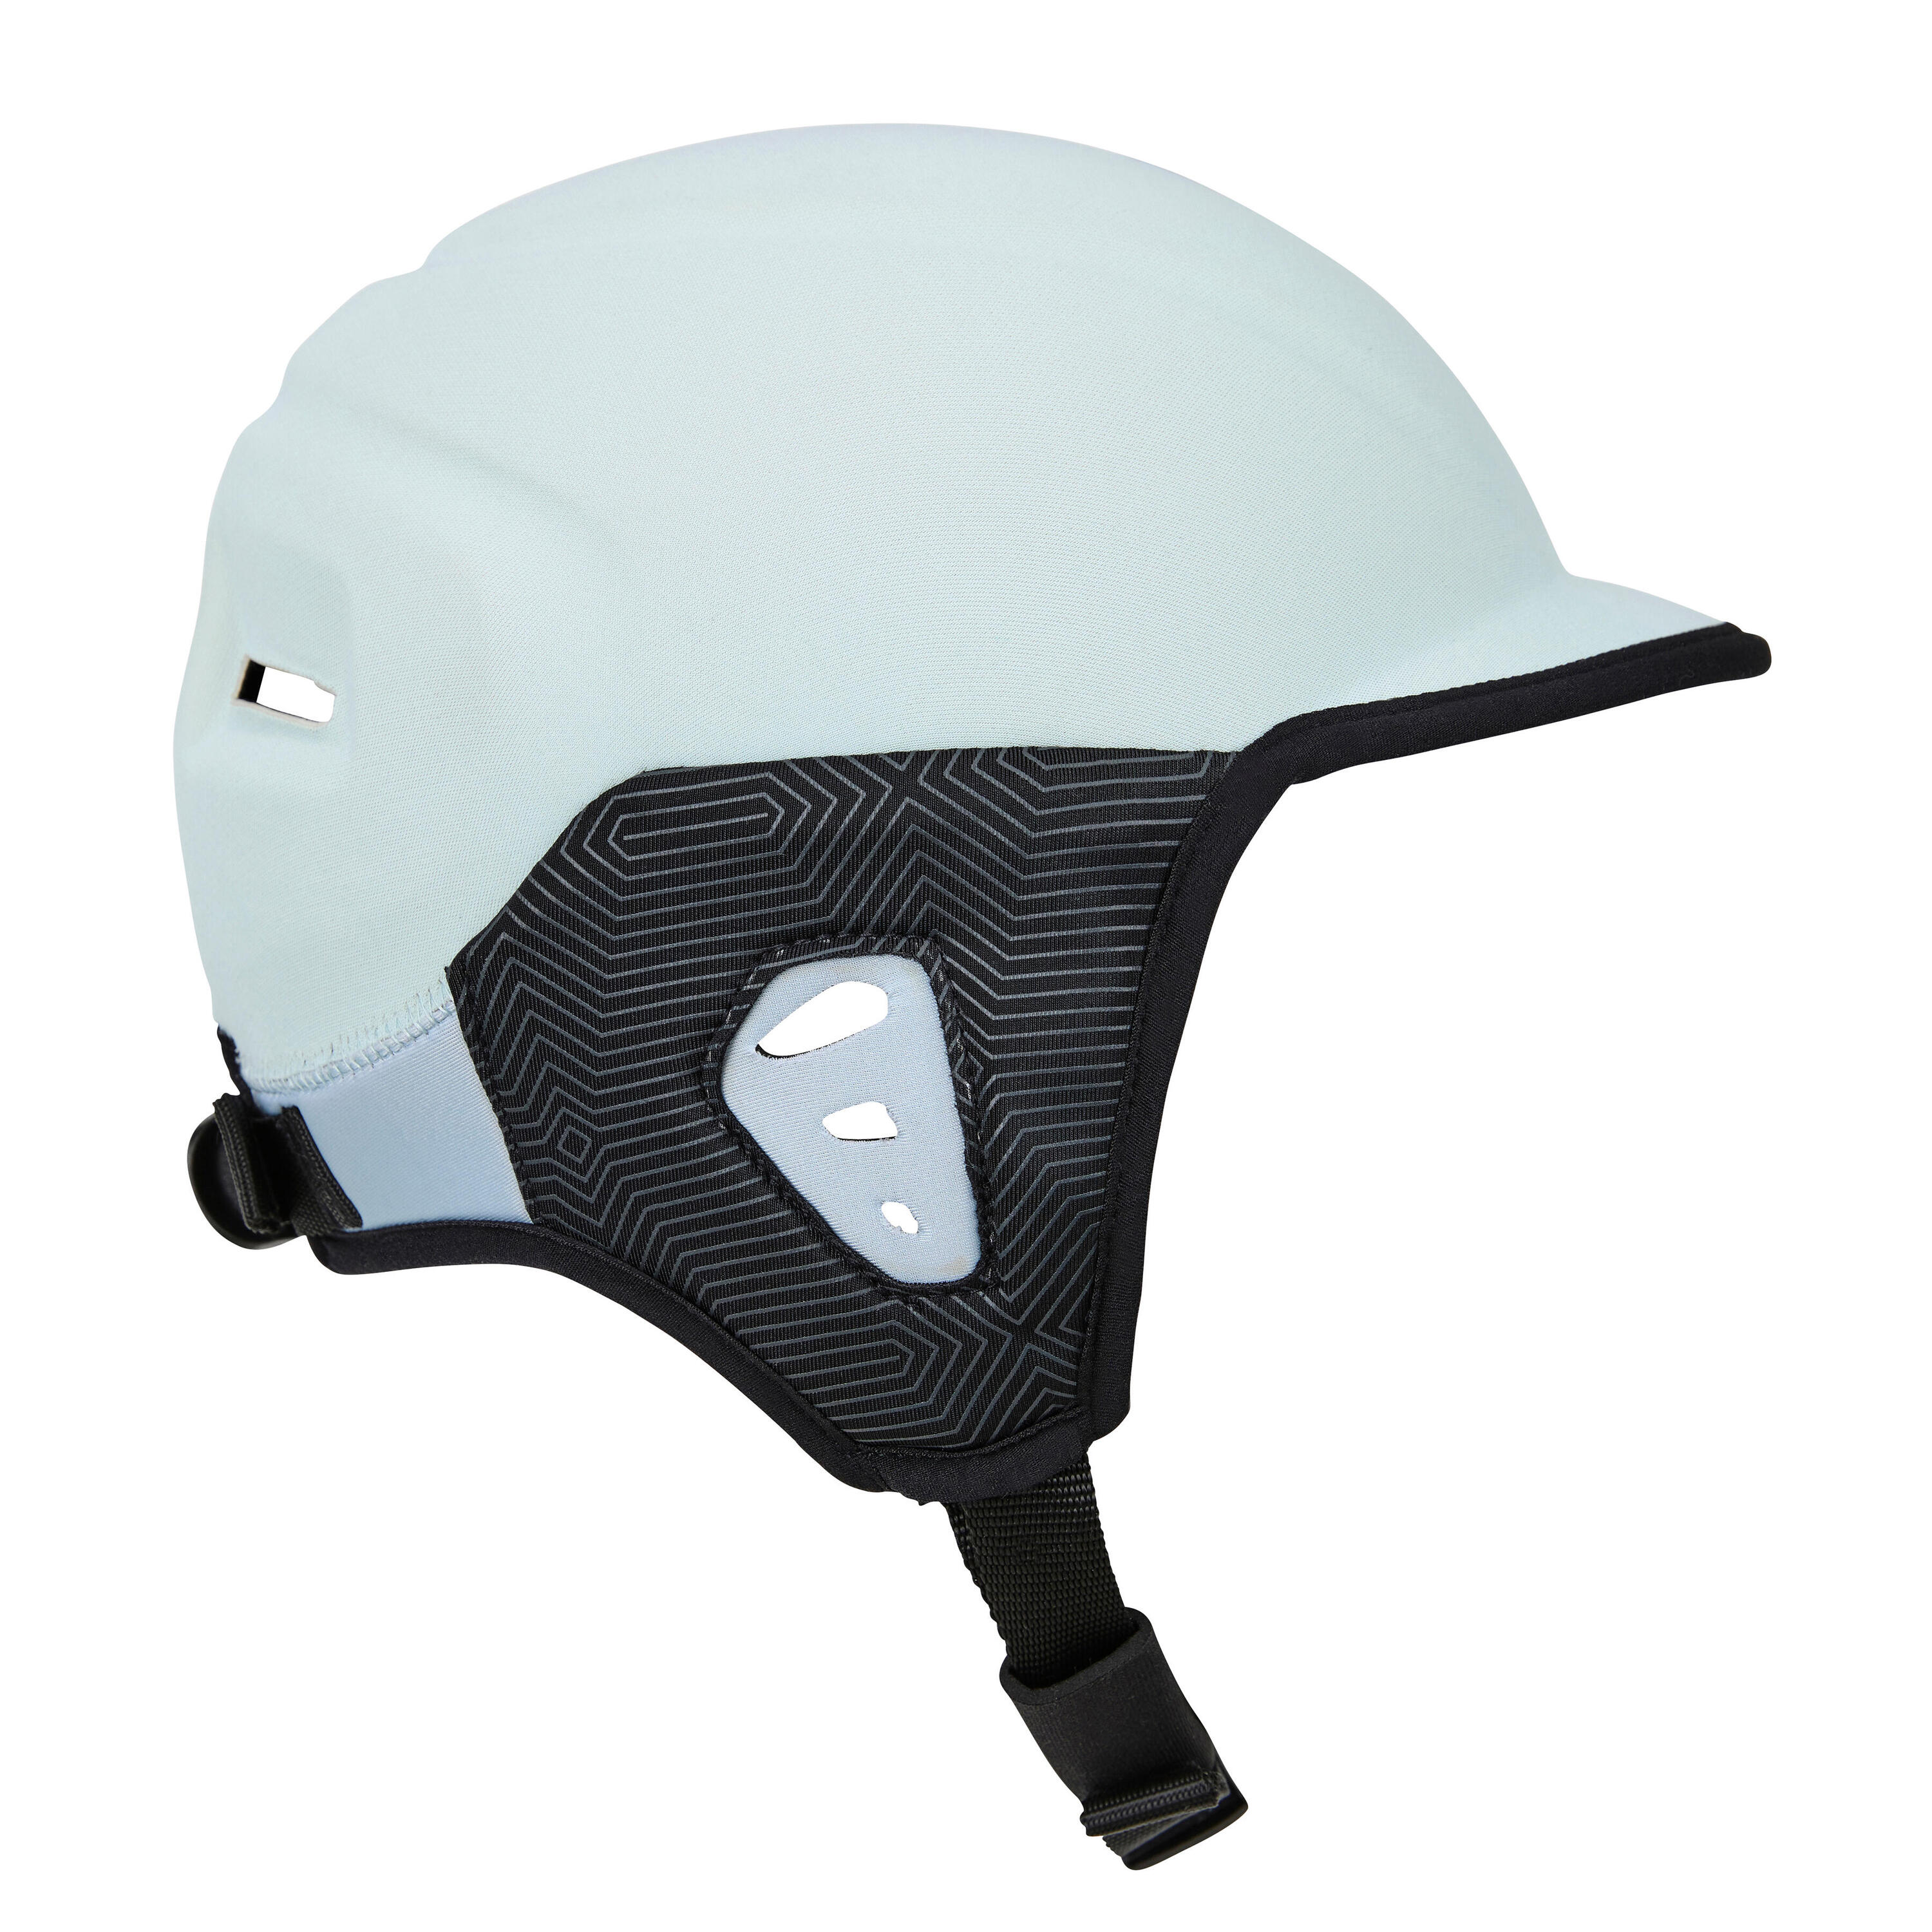 Helmet for surfing. Sky blue 5/7